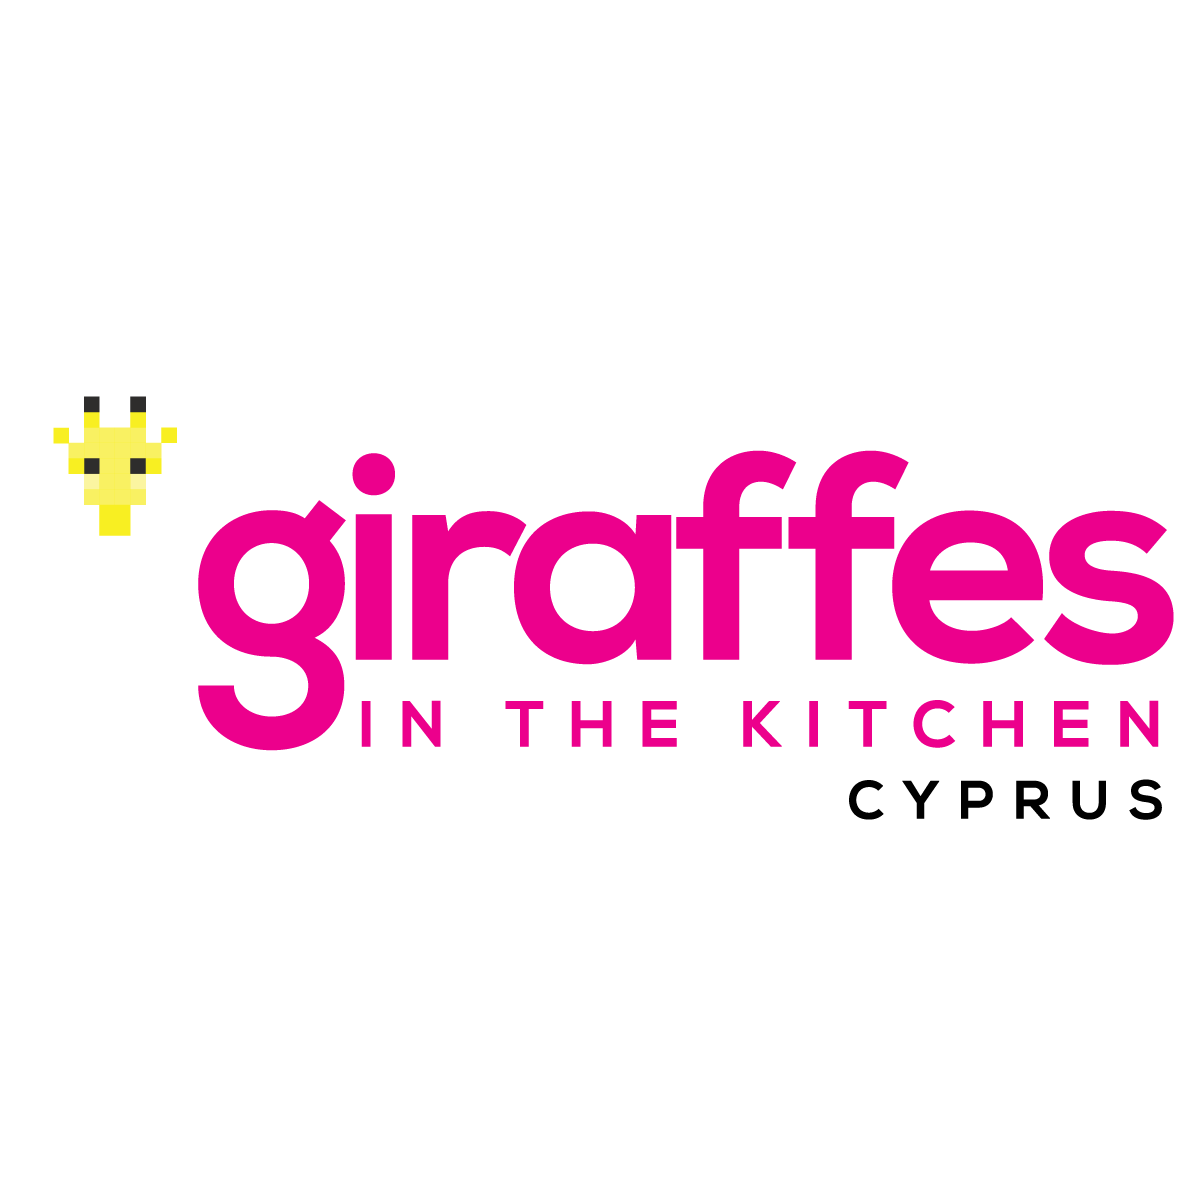 Giraffes in the Kitchen sponsor logo